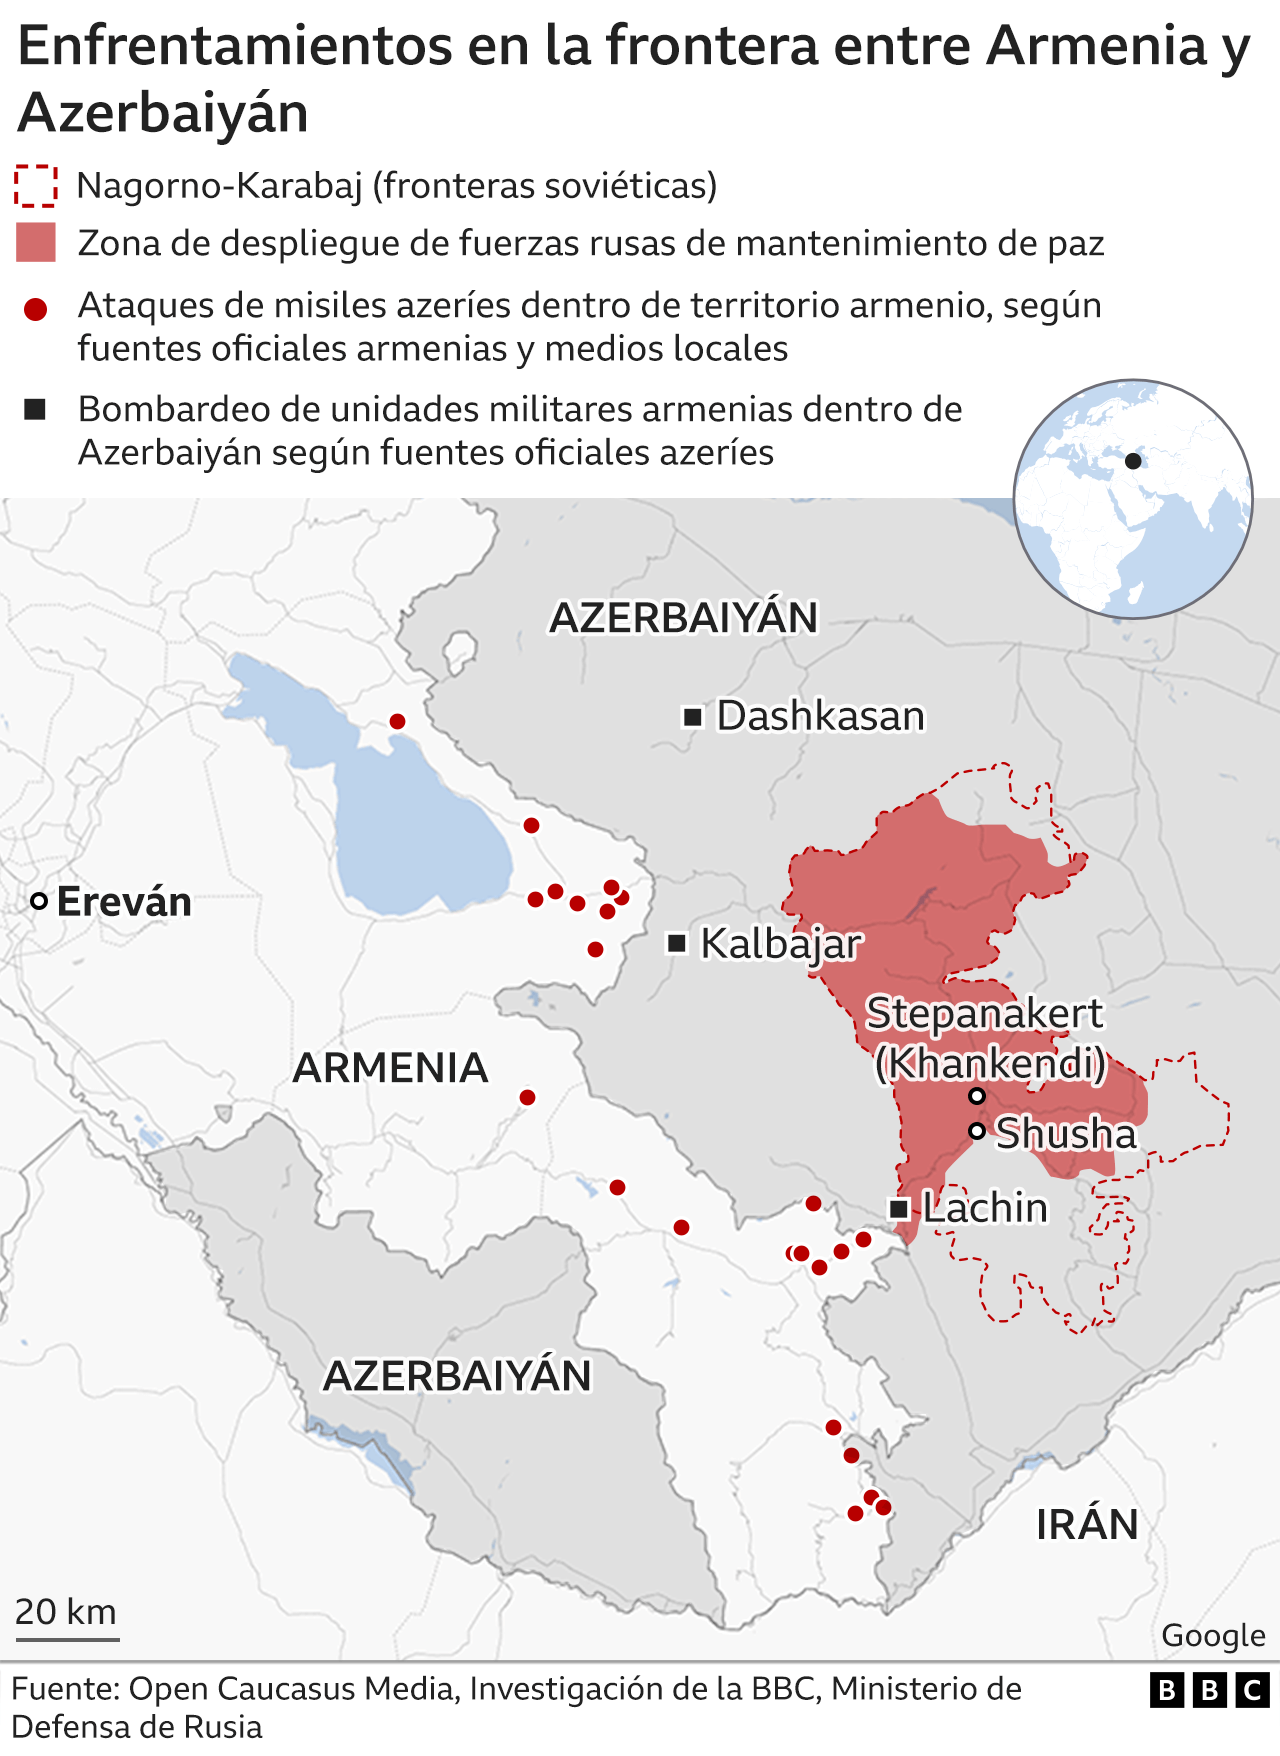 Enfrentamientos en la frontera de Armenia y Azerbaiyán.